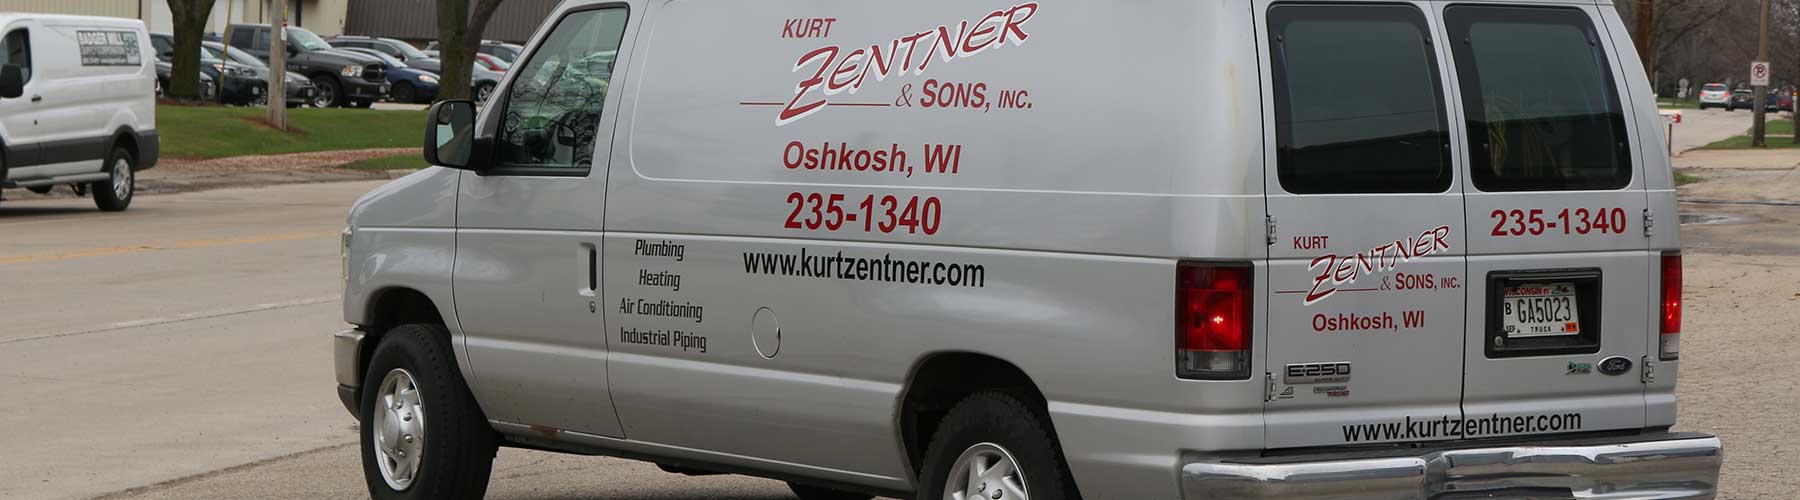 Kurt Zentner & Sons Plumbing & Heating maintenance van